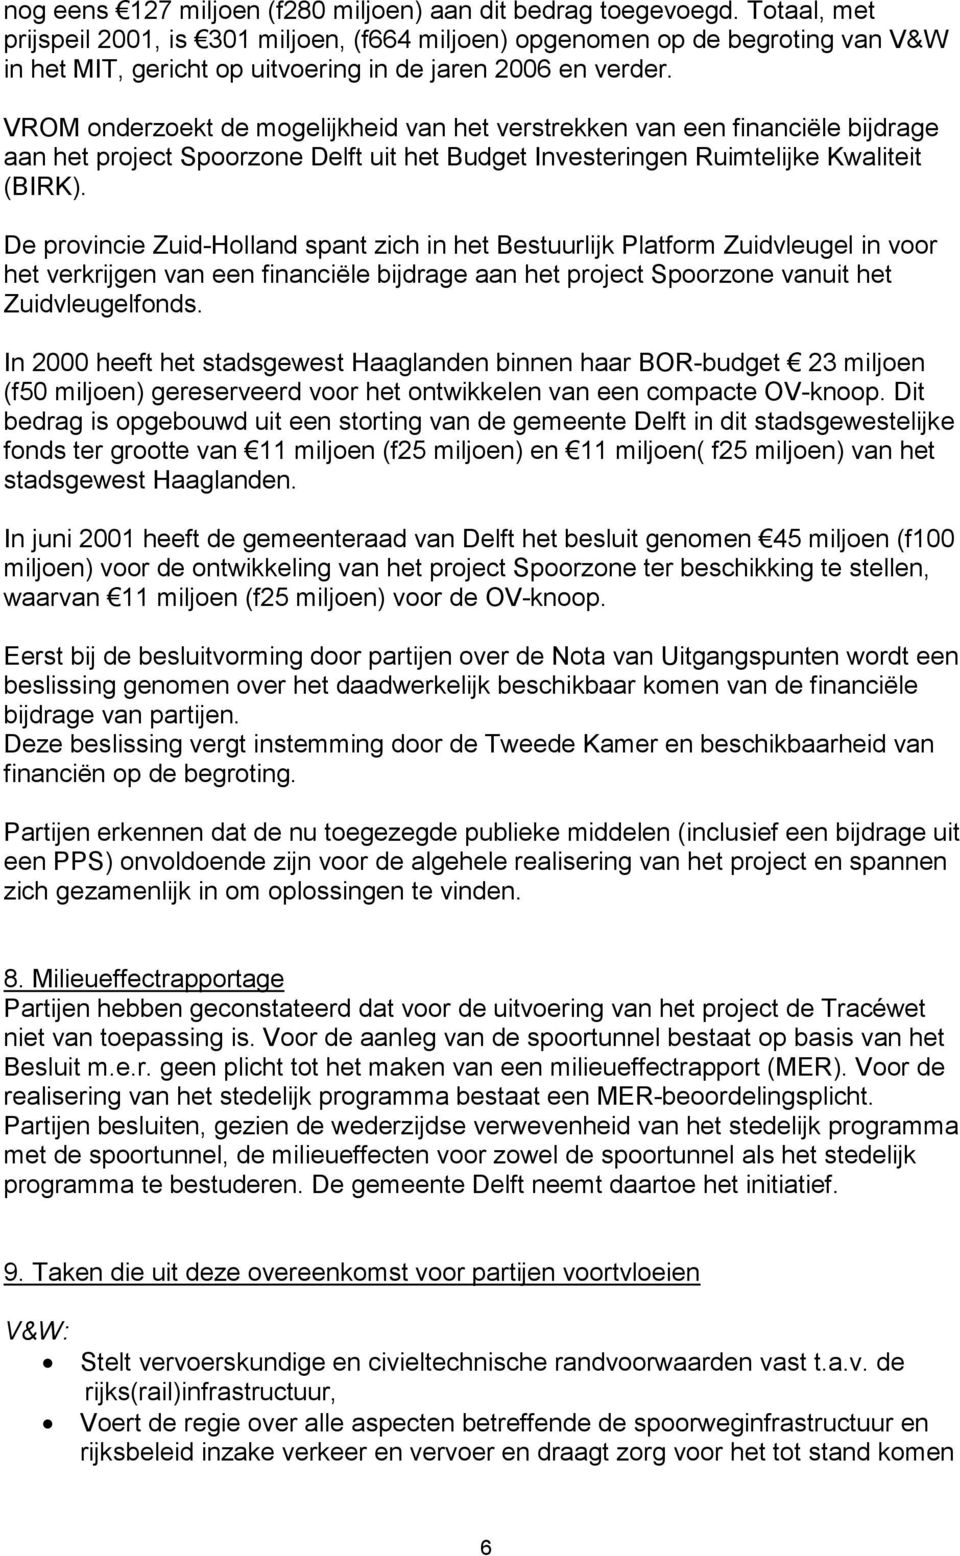 VROM onderzoekt de mogelijkheid van het verstrekken van een financiële bijdrage aan het project Spoorzone Delft uit het Budget Investeringen Ruimtelijke Kwaliteit (BIRK).